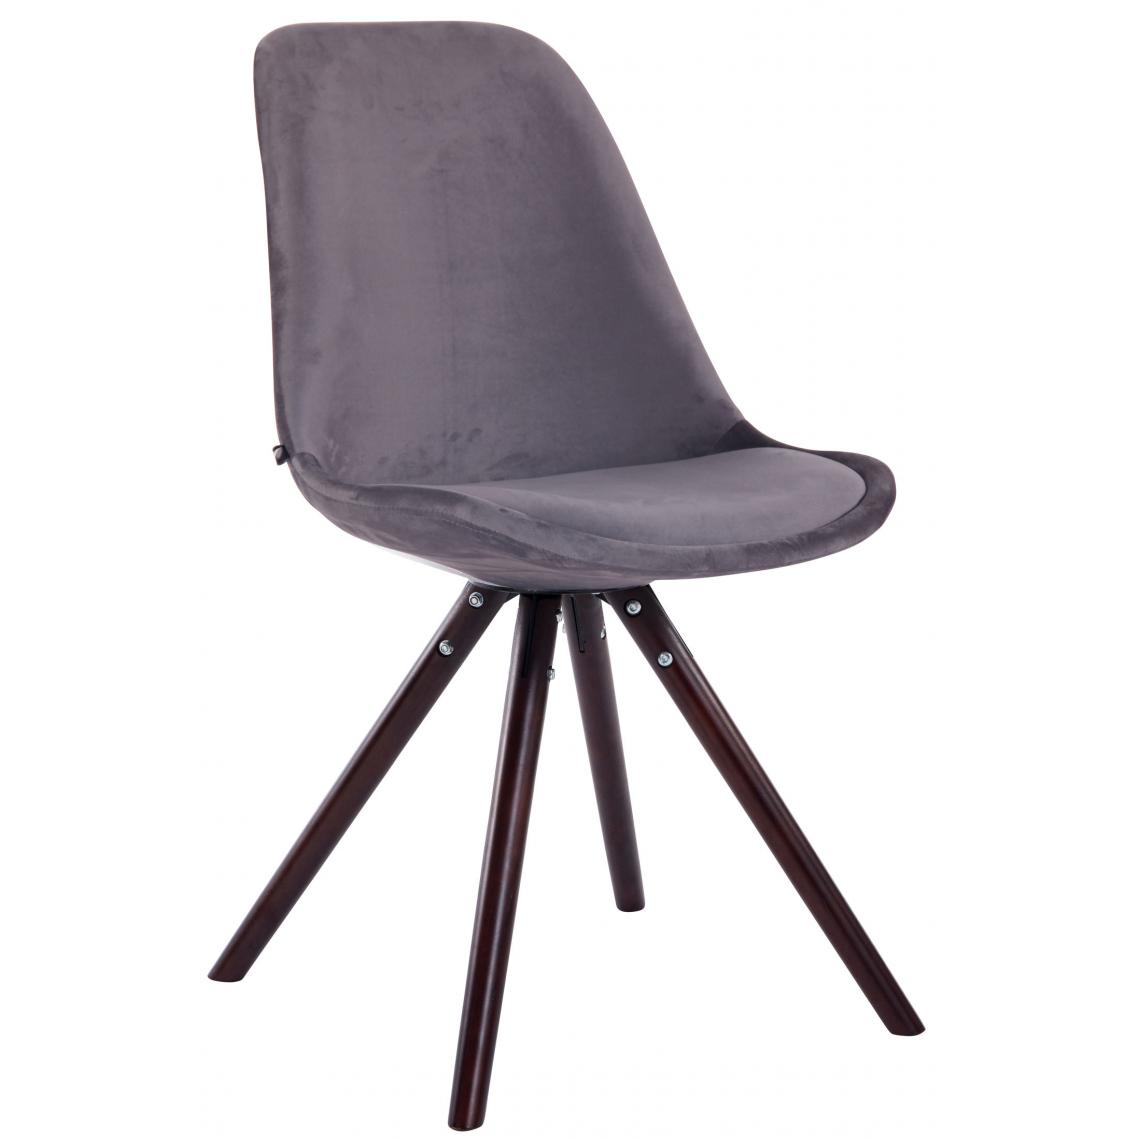 Icaverne - Moderne Chaise visiteur serie Katmandou velours rond cappuccino (chêne) couleur gris foncé - Chaises